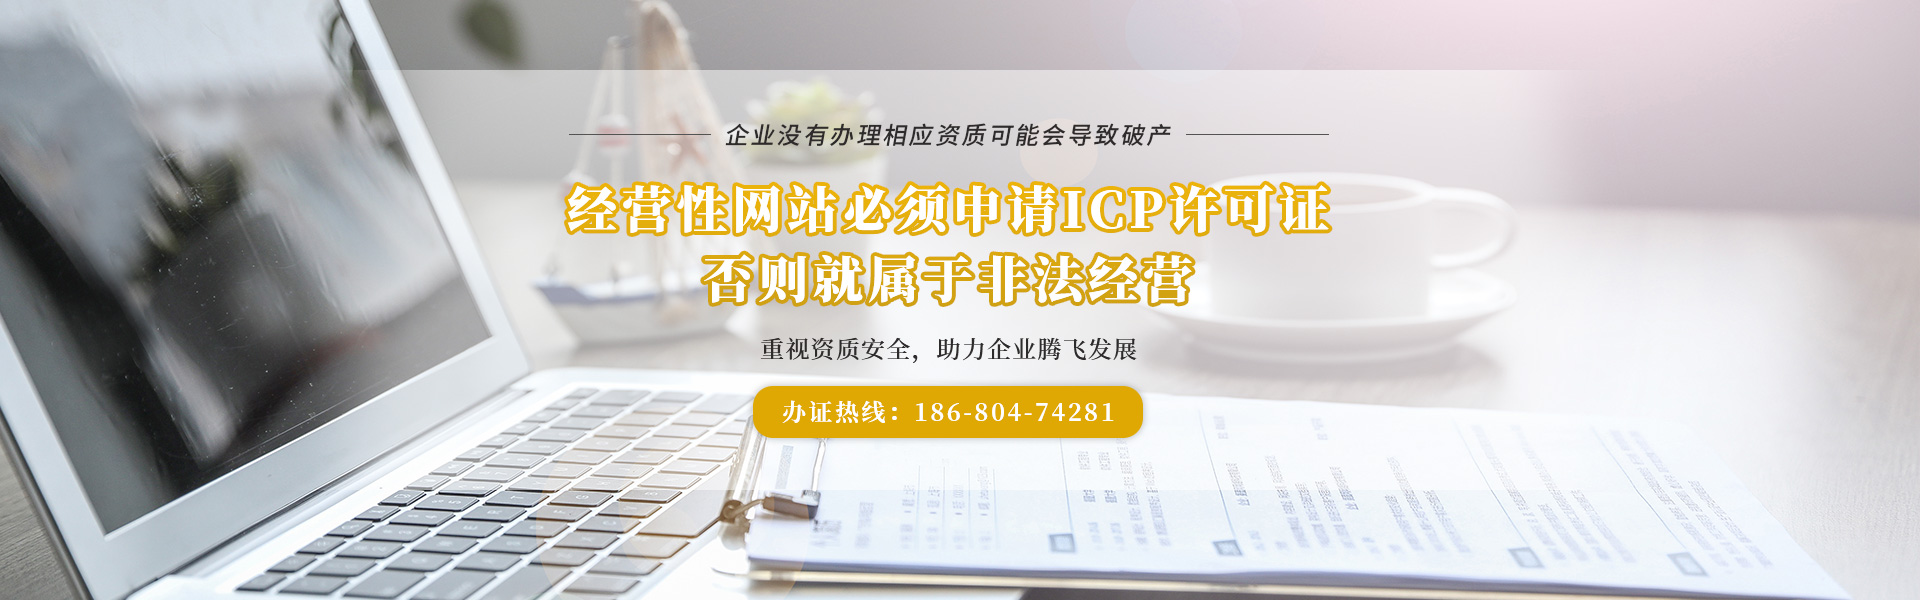 广州汇创财务,您身边的icp经营许可证代办专家